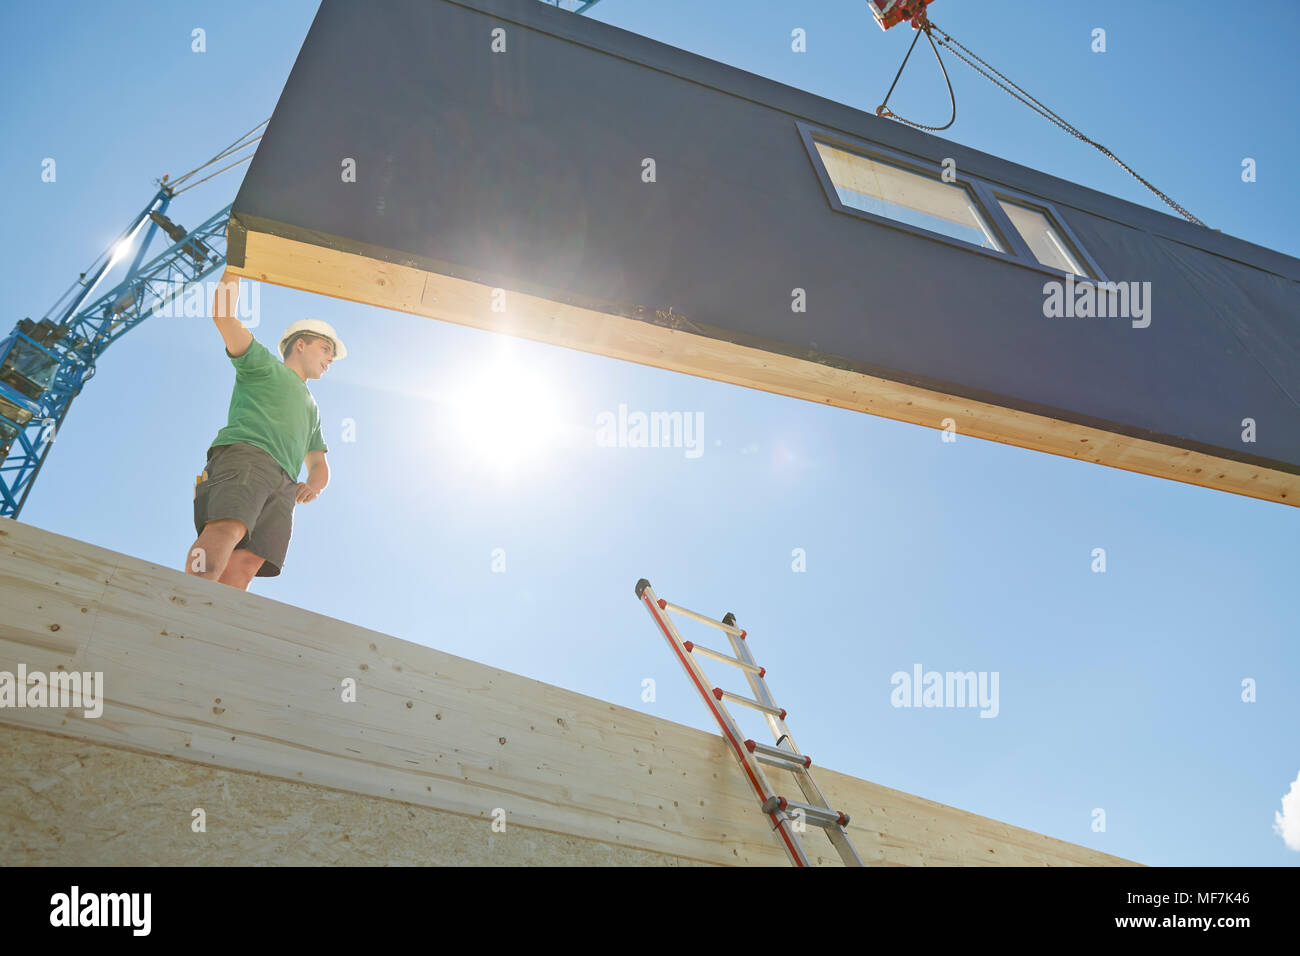 Austria, trabajador contra el sol, la pared exterior de posicionamiento Foto de stock